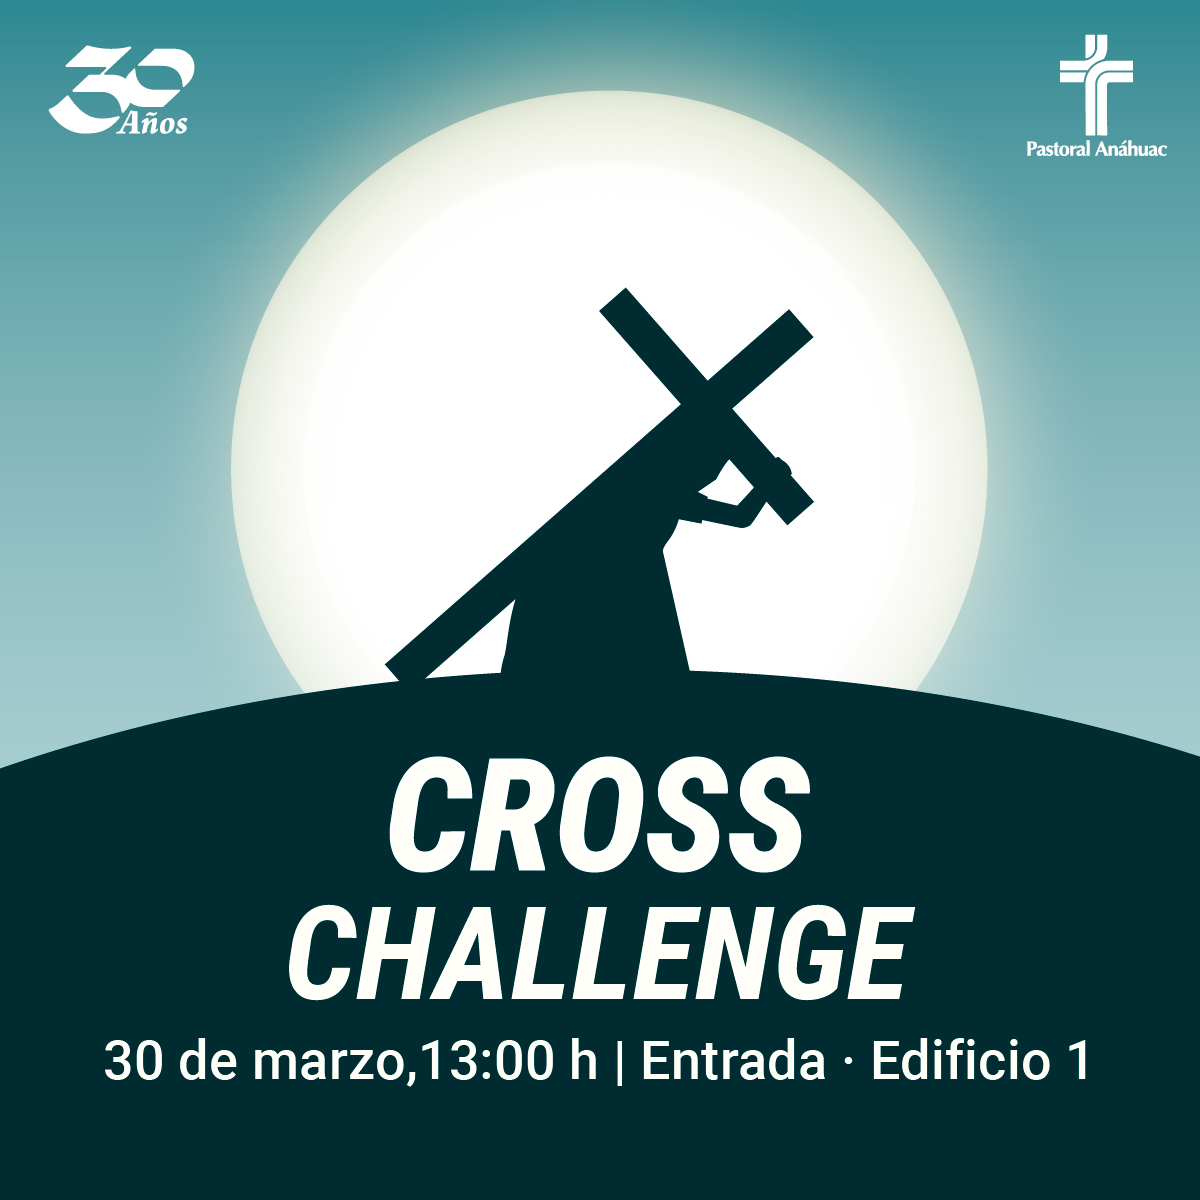 Cross Challenge